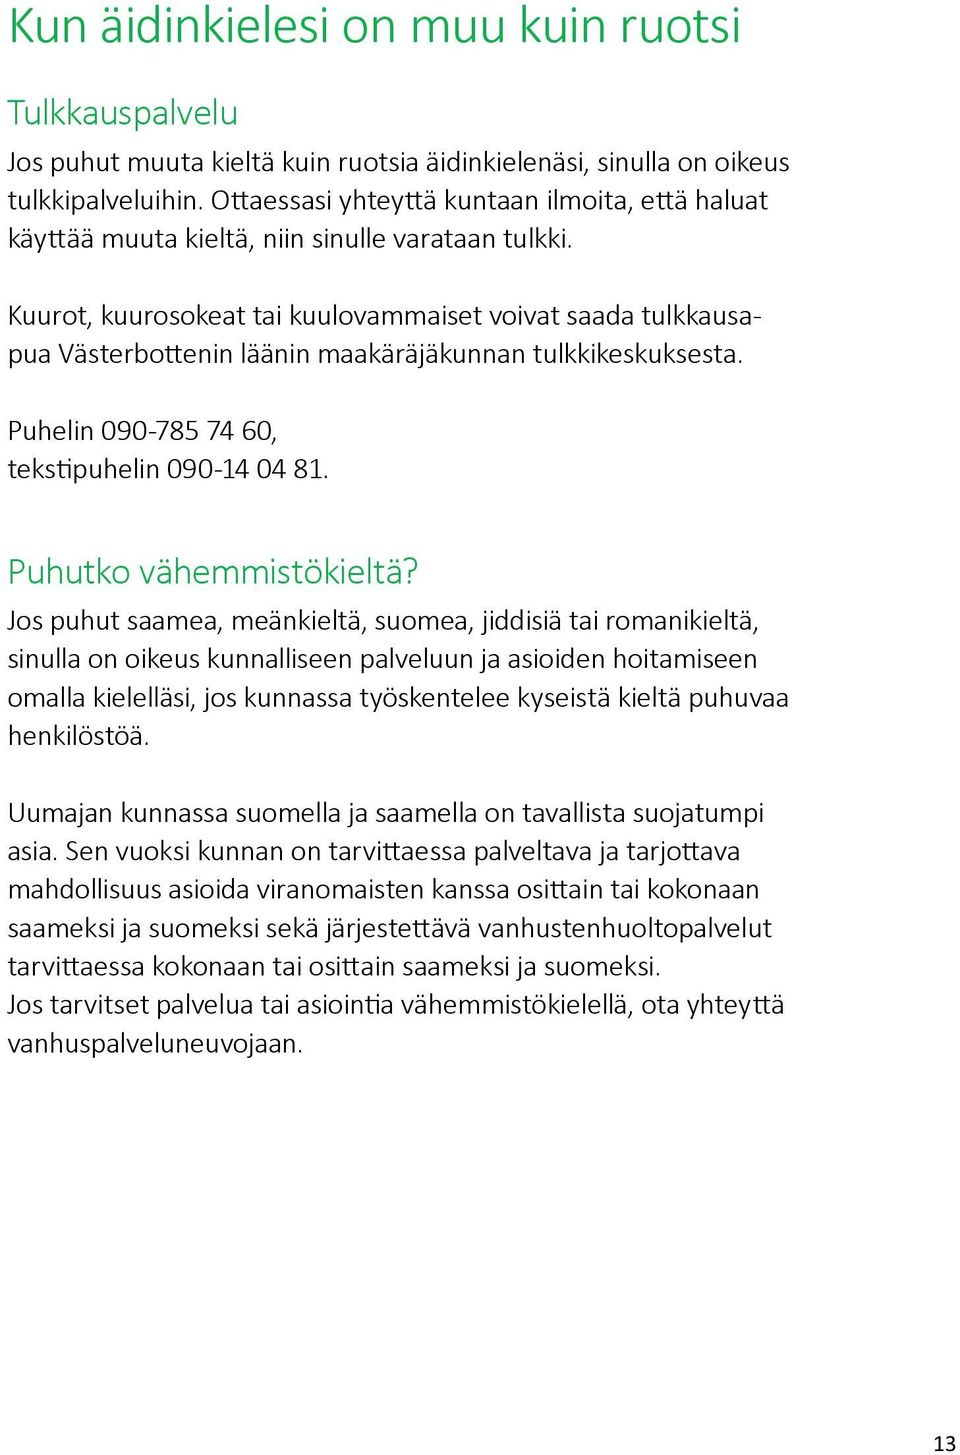 Kuurot, kuurosokeat tai kuulovammaiset voivat saada tulkkausapua Västerbottenin läänin maakäräjäkunnan tulkkikeskuksesta. Puhelin 090-785 74 60, tekstipuhelin 090-14 04 81. Puhutko vähemmistökieltä?